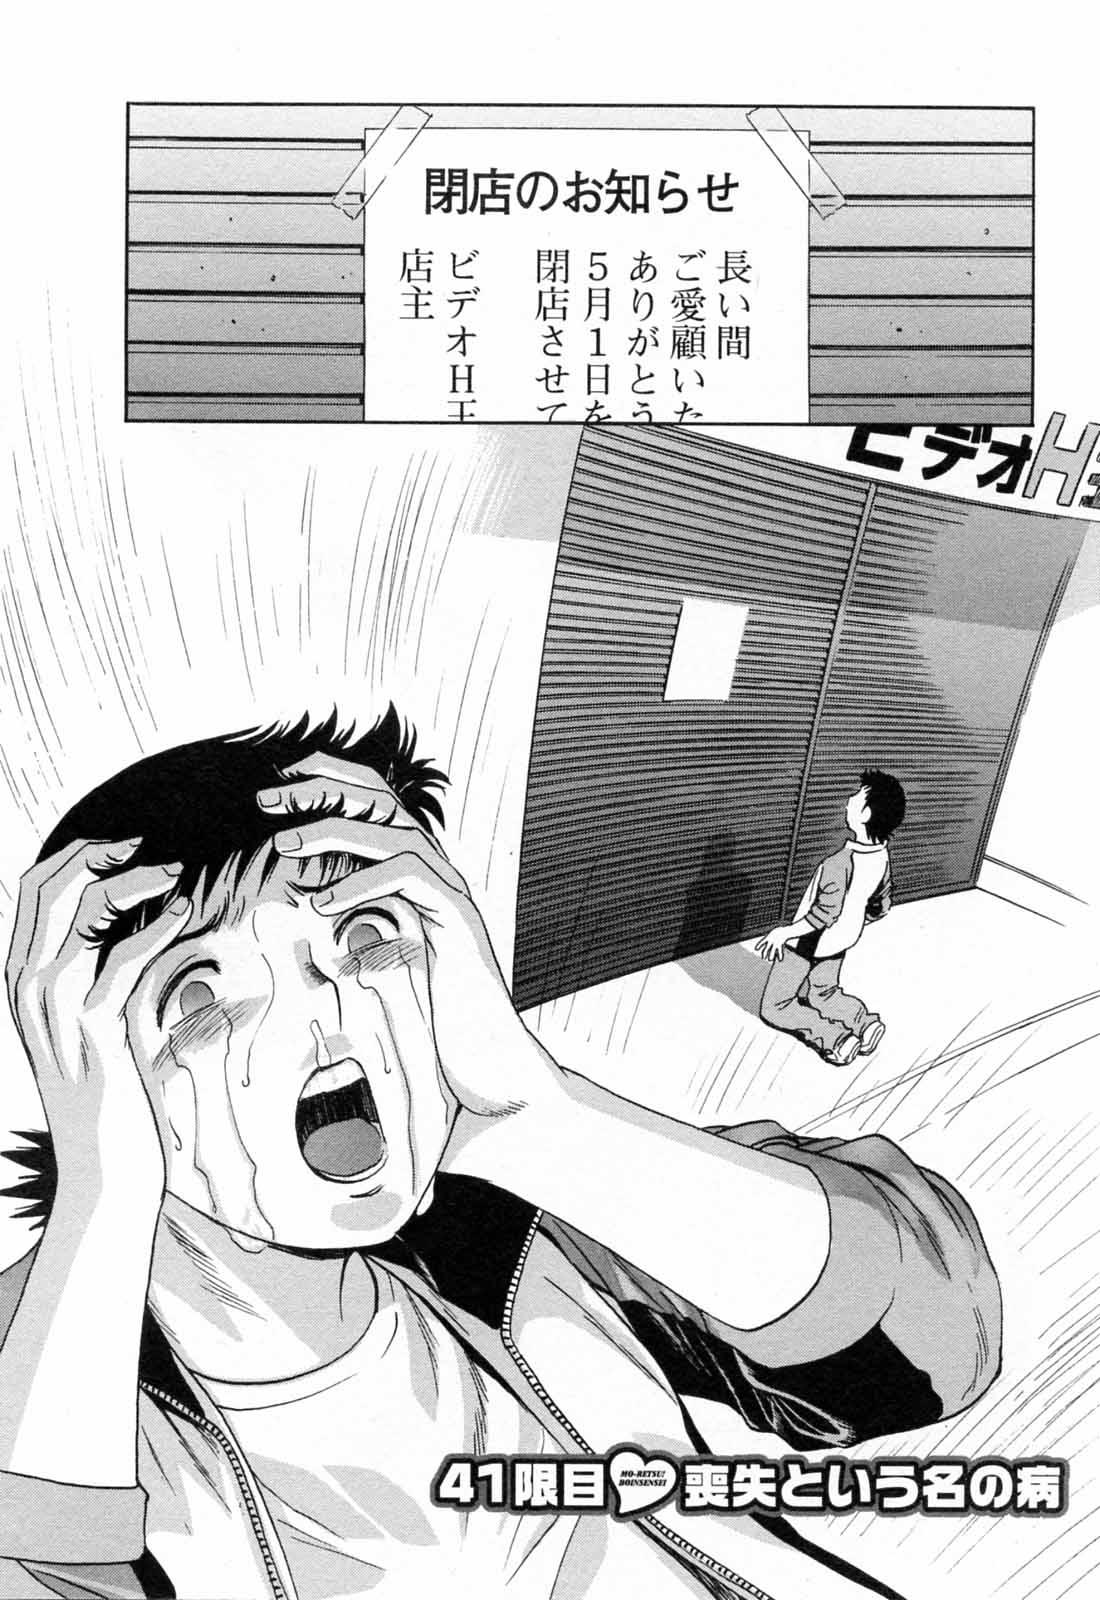 [Hidemaru] Mo-Retsu! Boin Sensei (Boing Boing Teacher) Vol.5 95